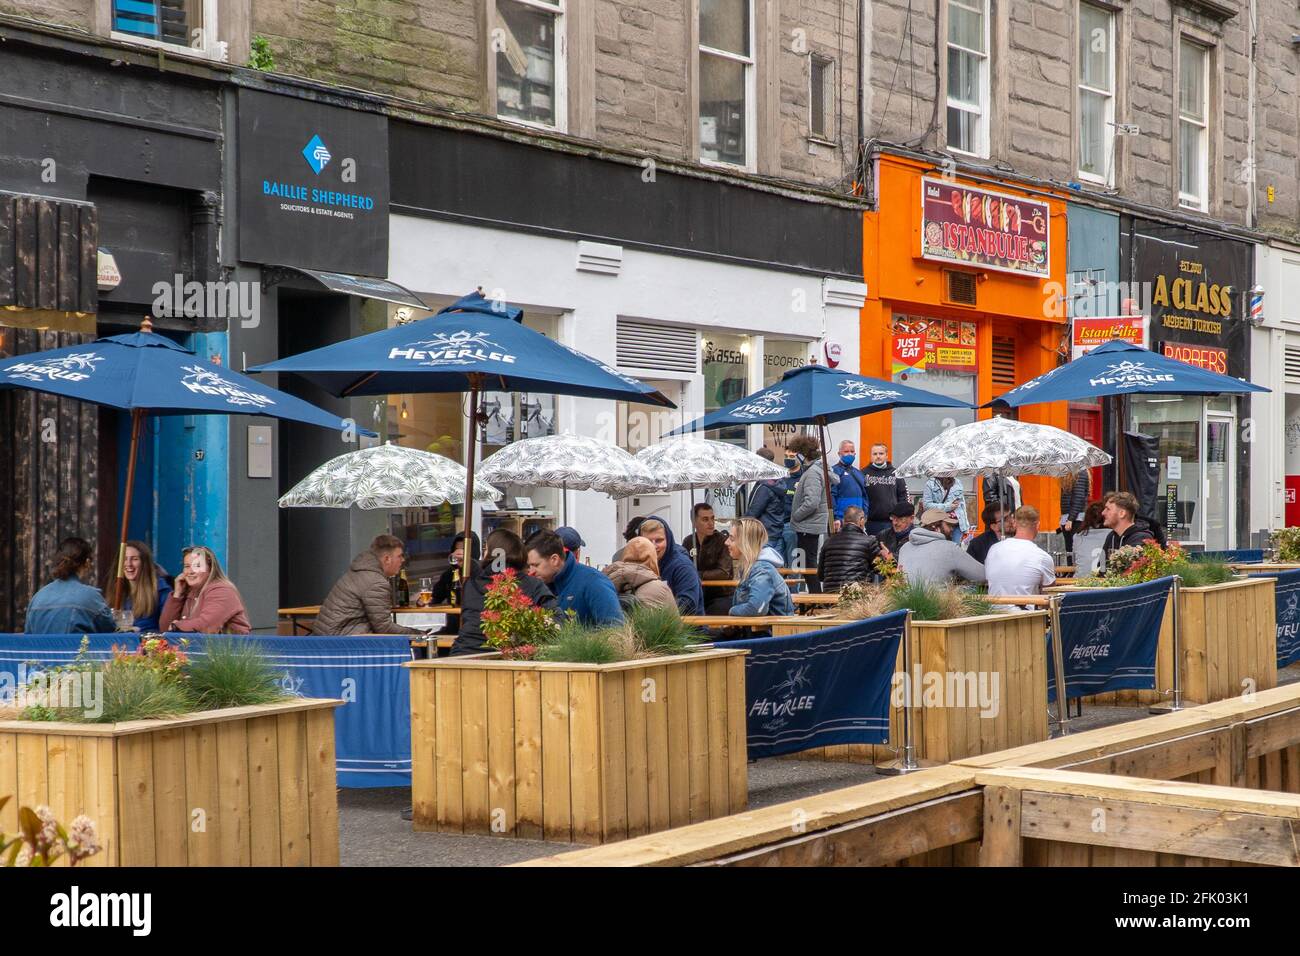 Dundee, Tayside, Scozia 26 aprile 2021: Pub con giardini di birra aperti in tutto il centro della città di Dundee, come il governo scozzese rilassare le restrizioni di blocco, che vedono l'apertura degli affari, e qualche normalità tornare alla vita della gente. Foto Stock